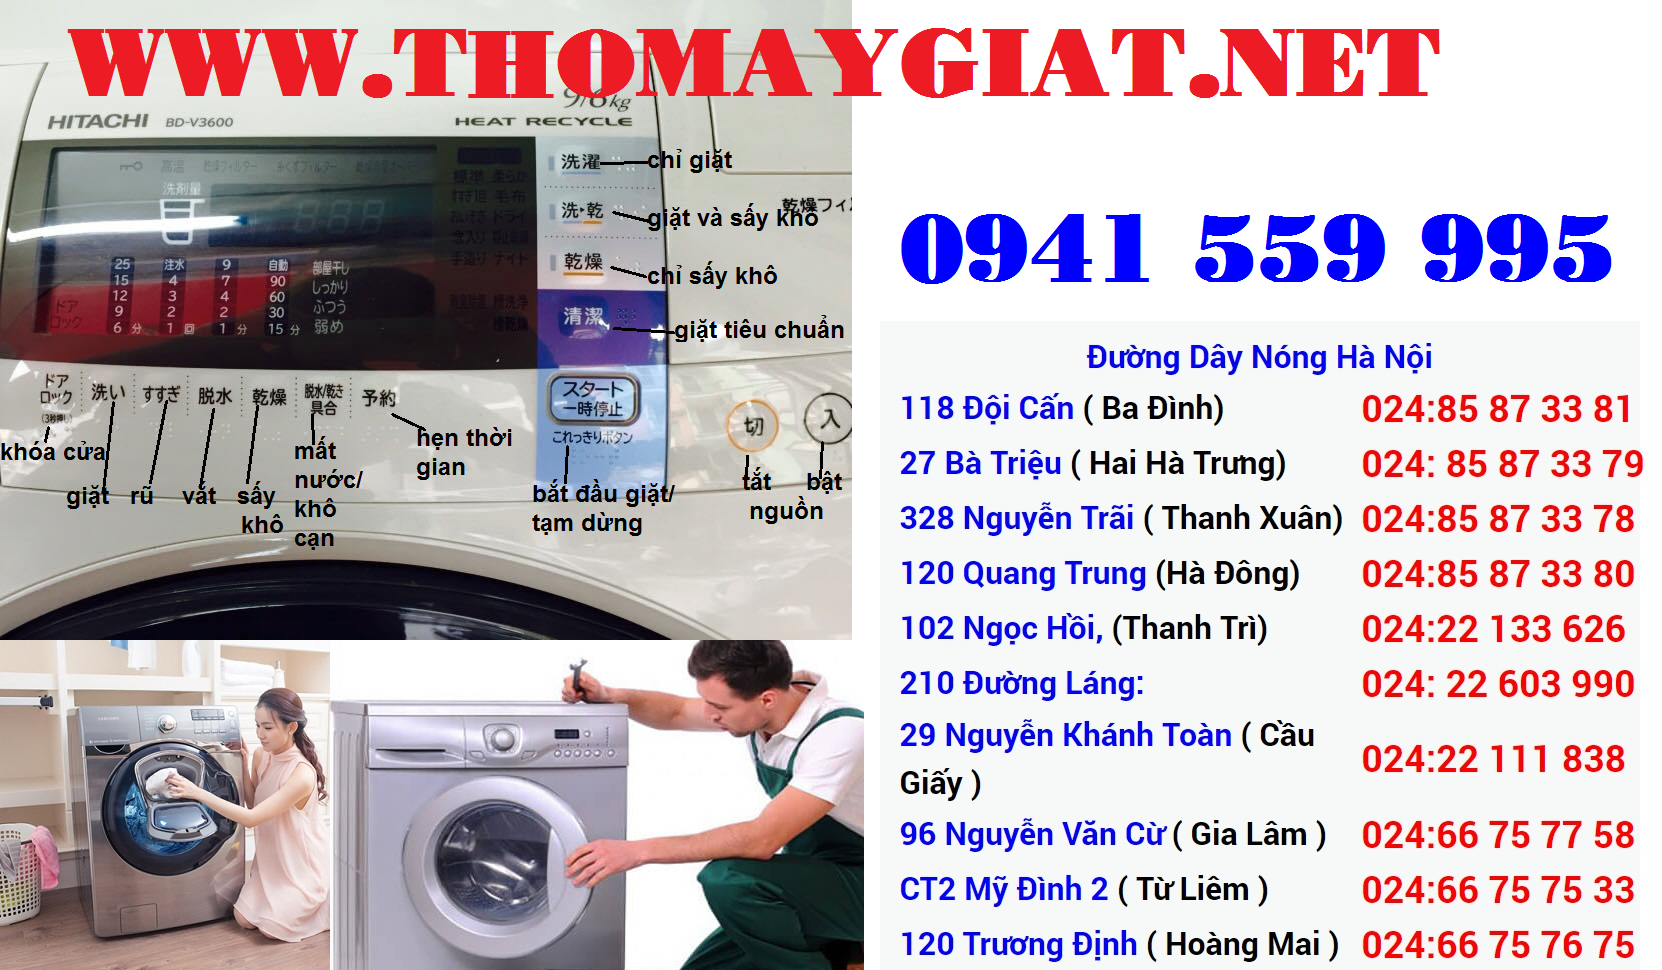 Các lỗi cơ bản cần sửa chữa của máy giặt và cách khắc phục Sua-may-giat-hitachi-1